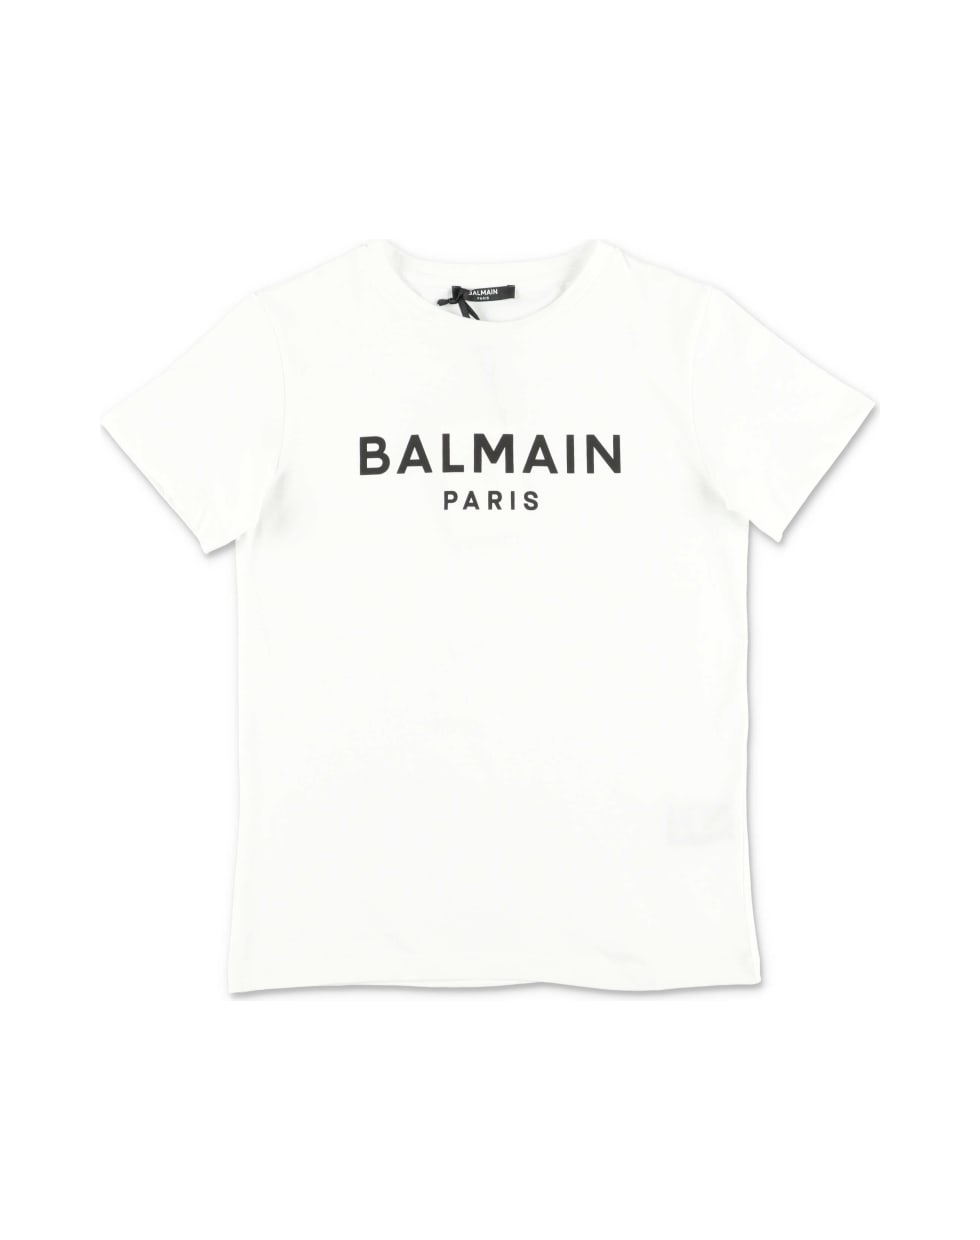 Balmain T-shirt Bianca In Jersey Di Cotone - Bianco/Nero